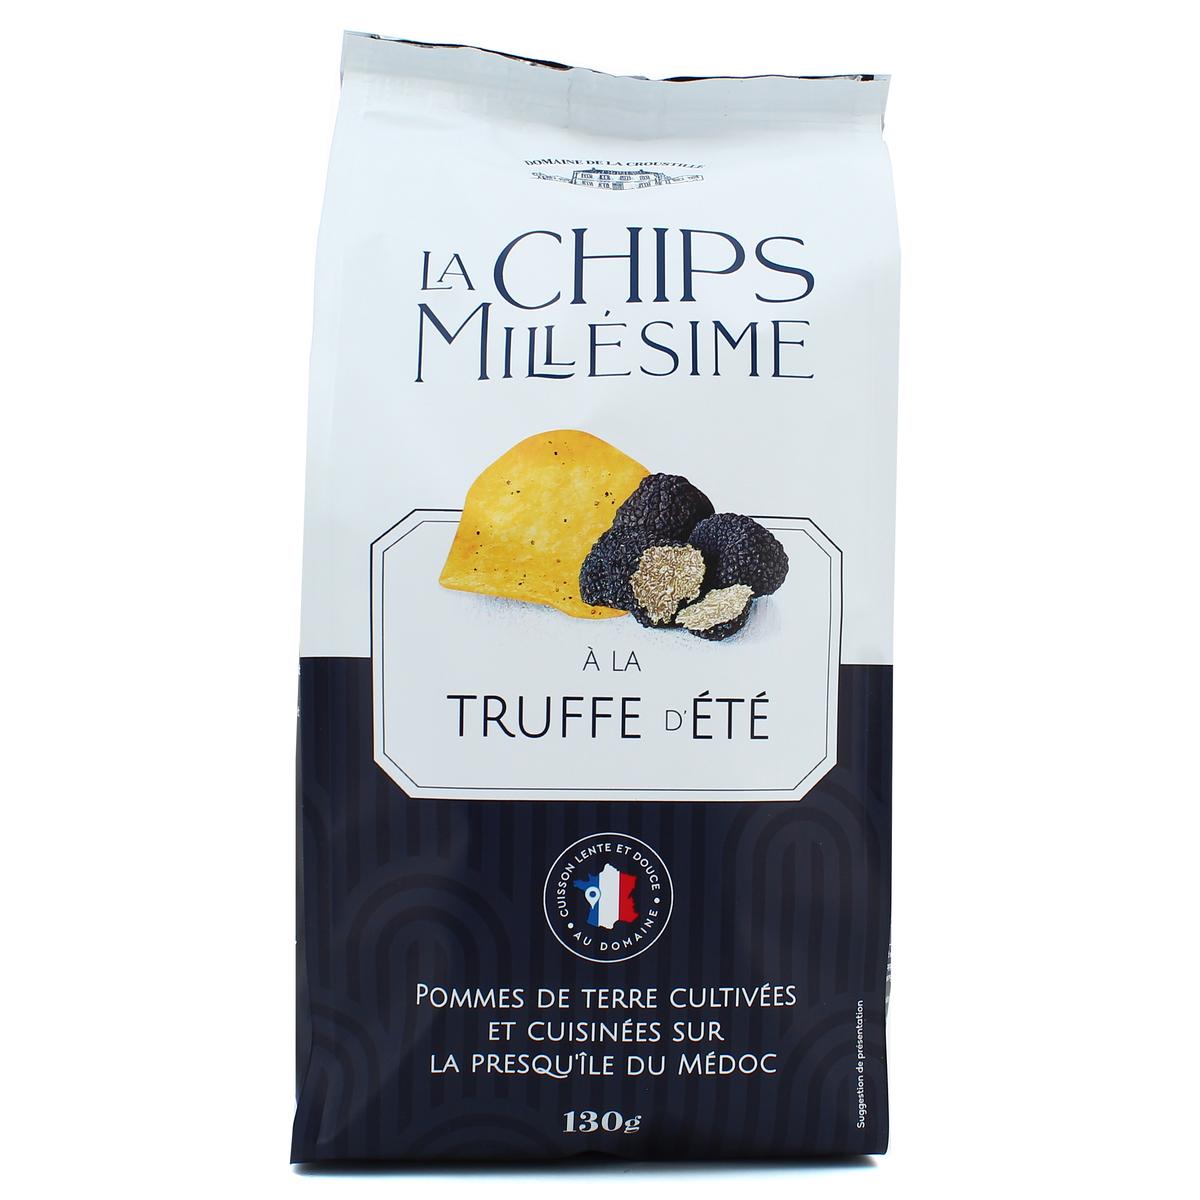 Achat Domaine de la Croustille Chips à la truffe d'été Millésime, 130g